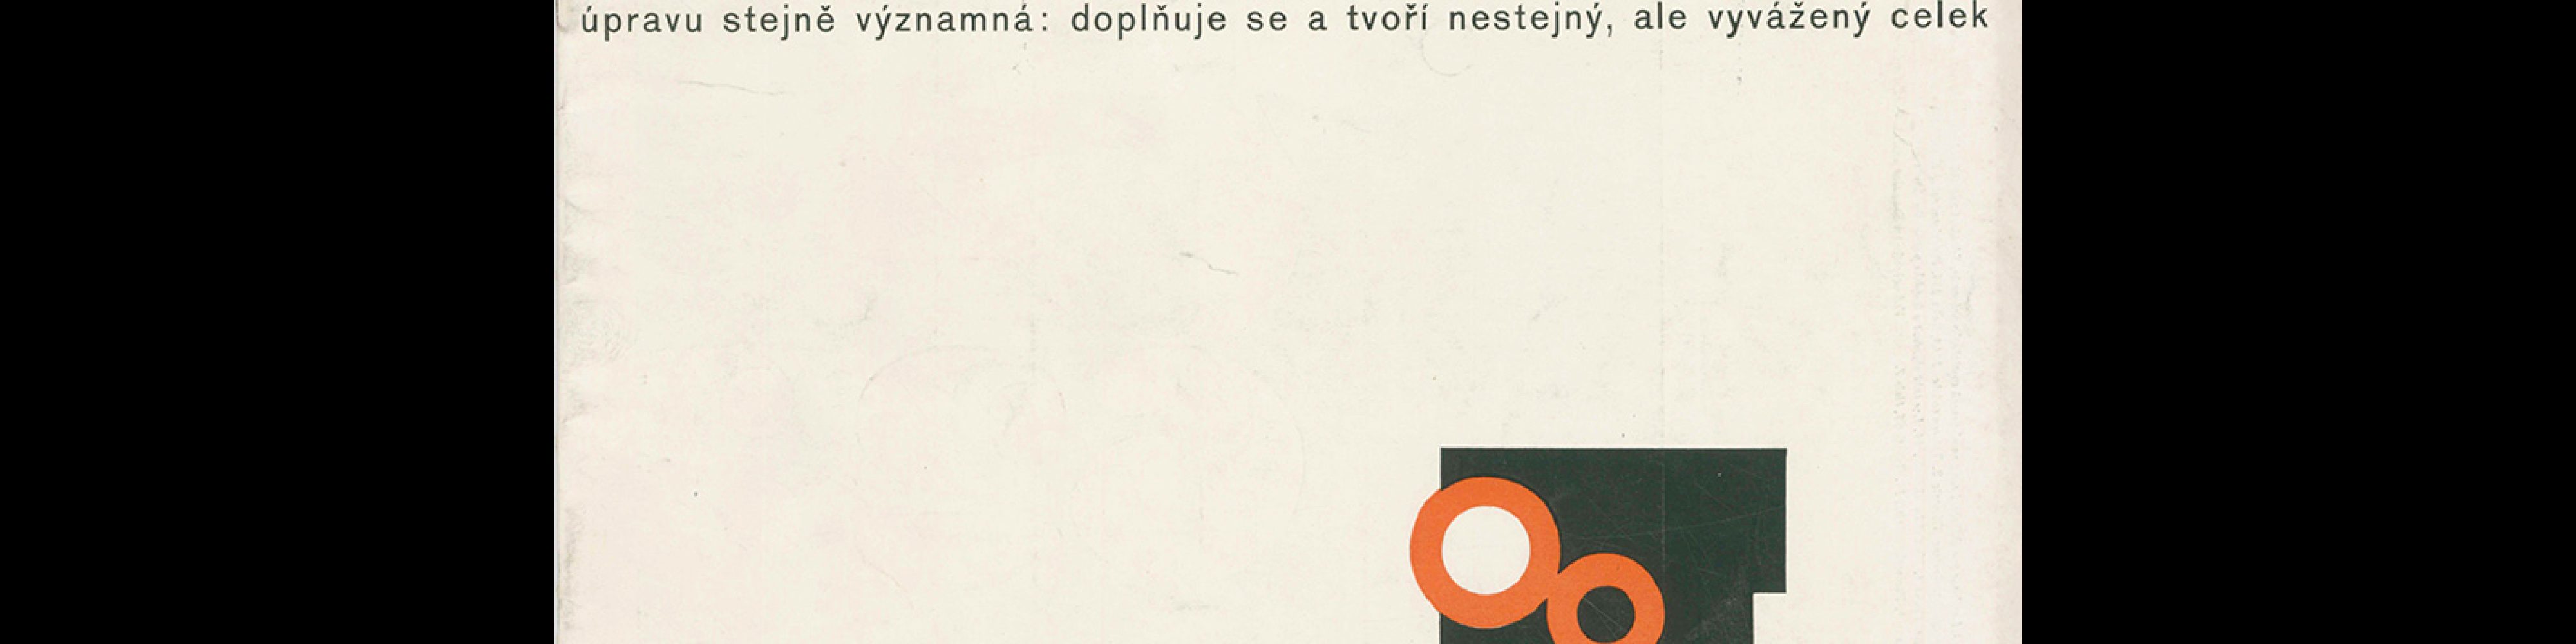 Typografia, ročník 66, 08, 1963. Cover design by Miroslav Nekys